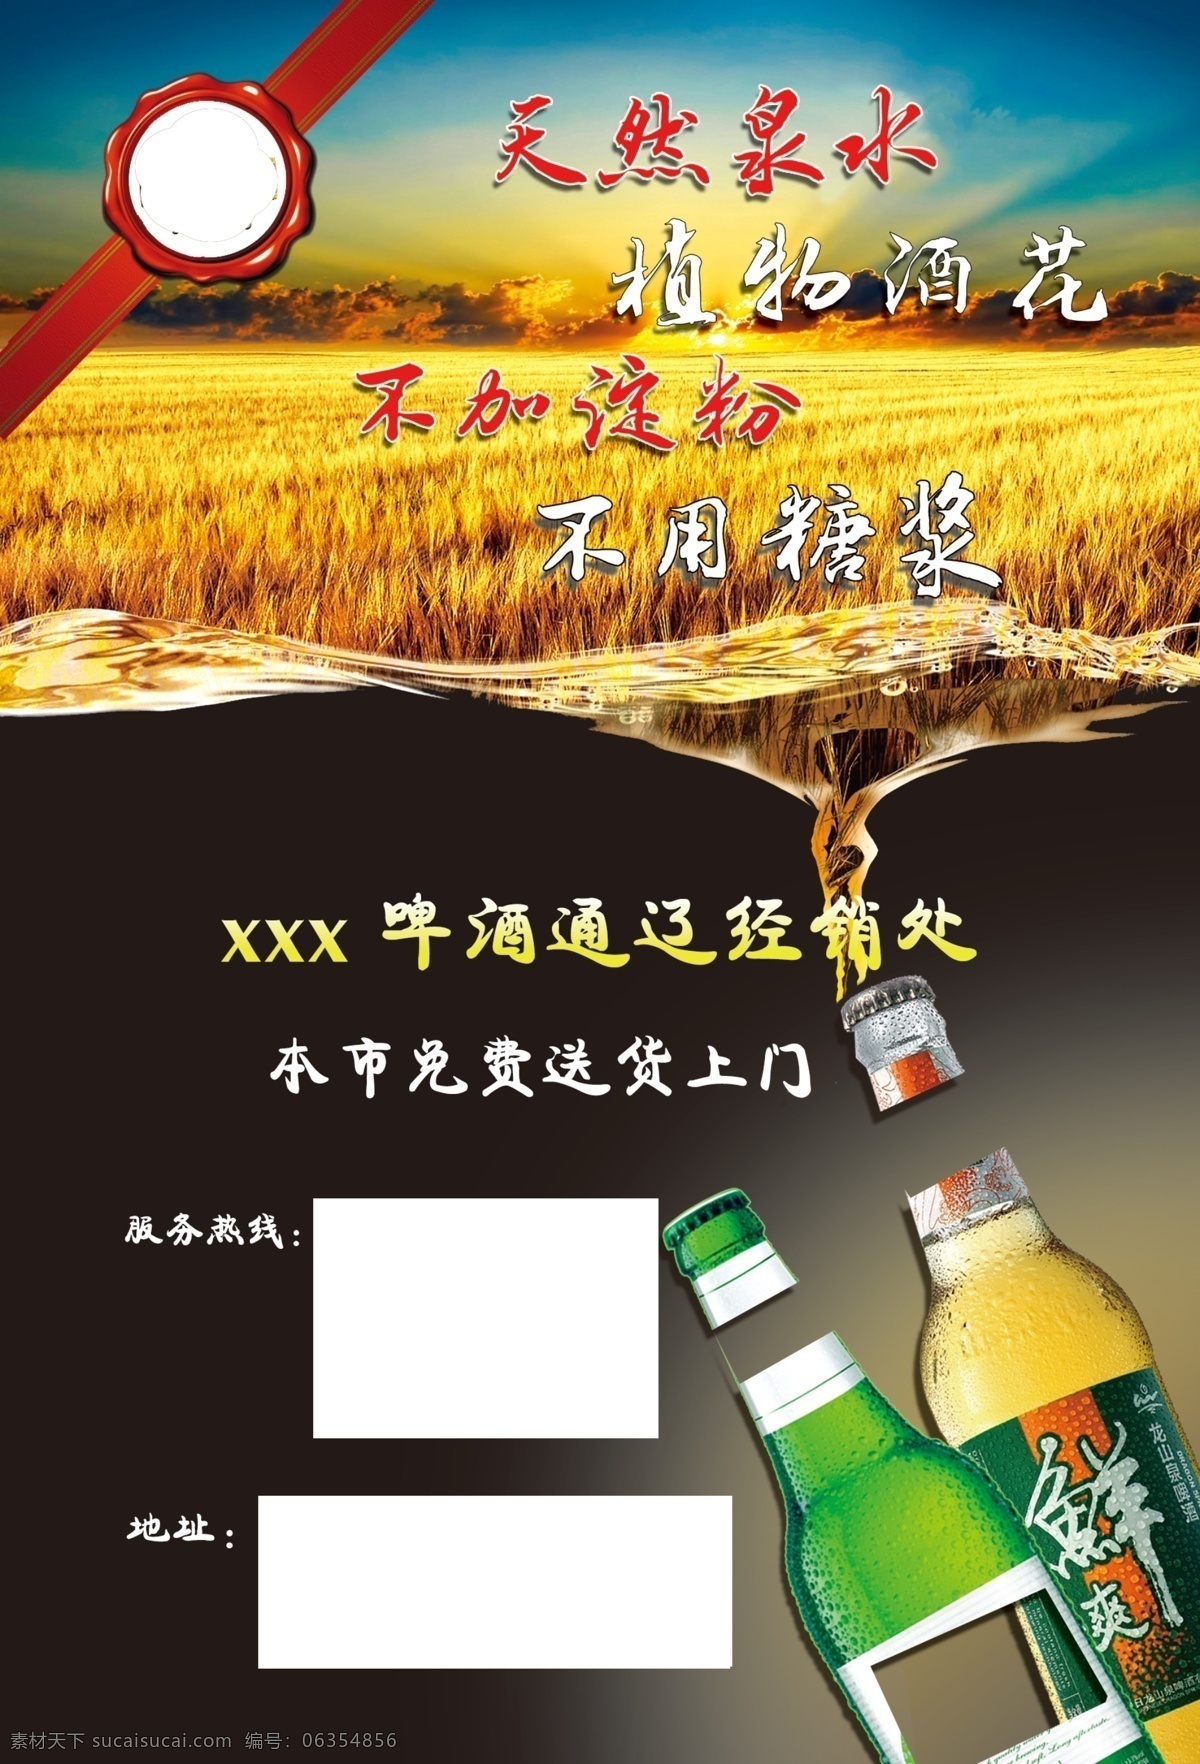 宣传单 海报 啤酒 啤酒广告 啤酒宣传单 啤酒素材 稻田